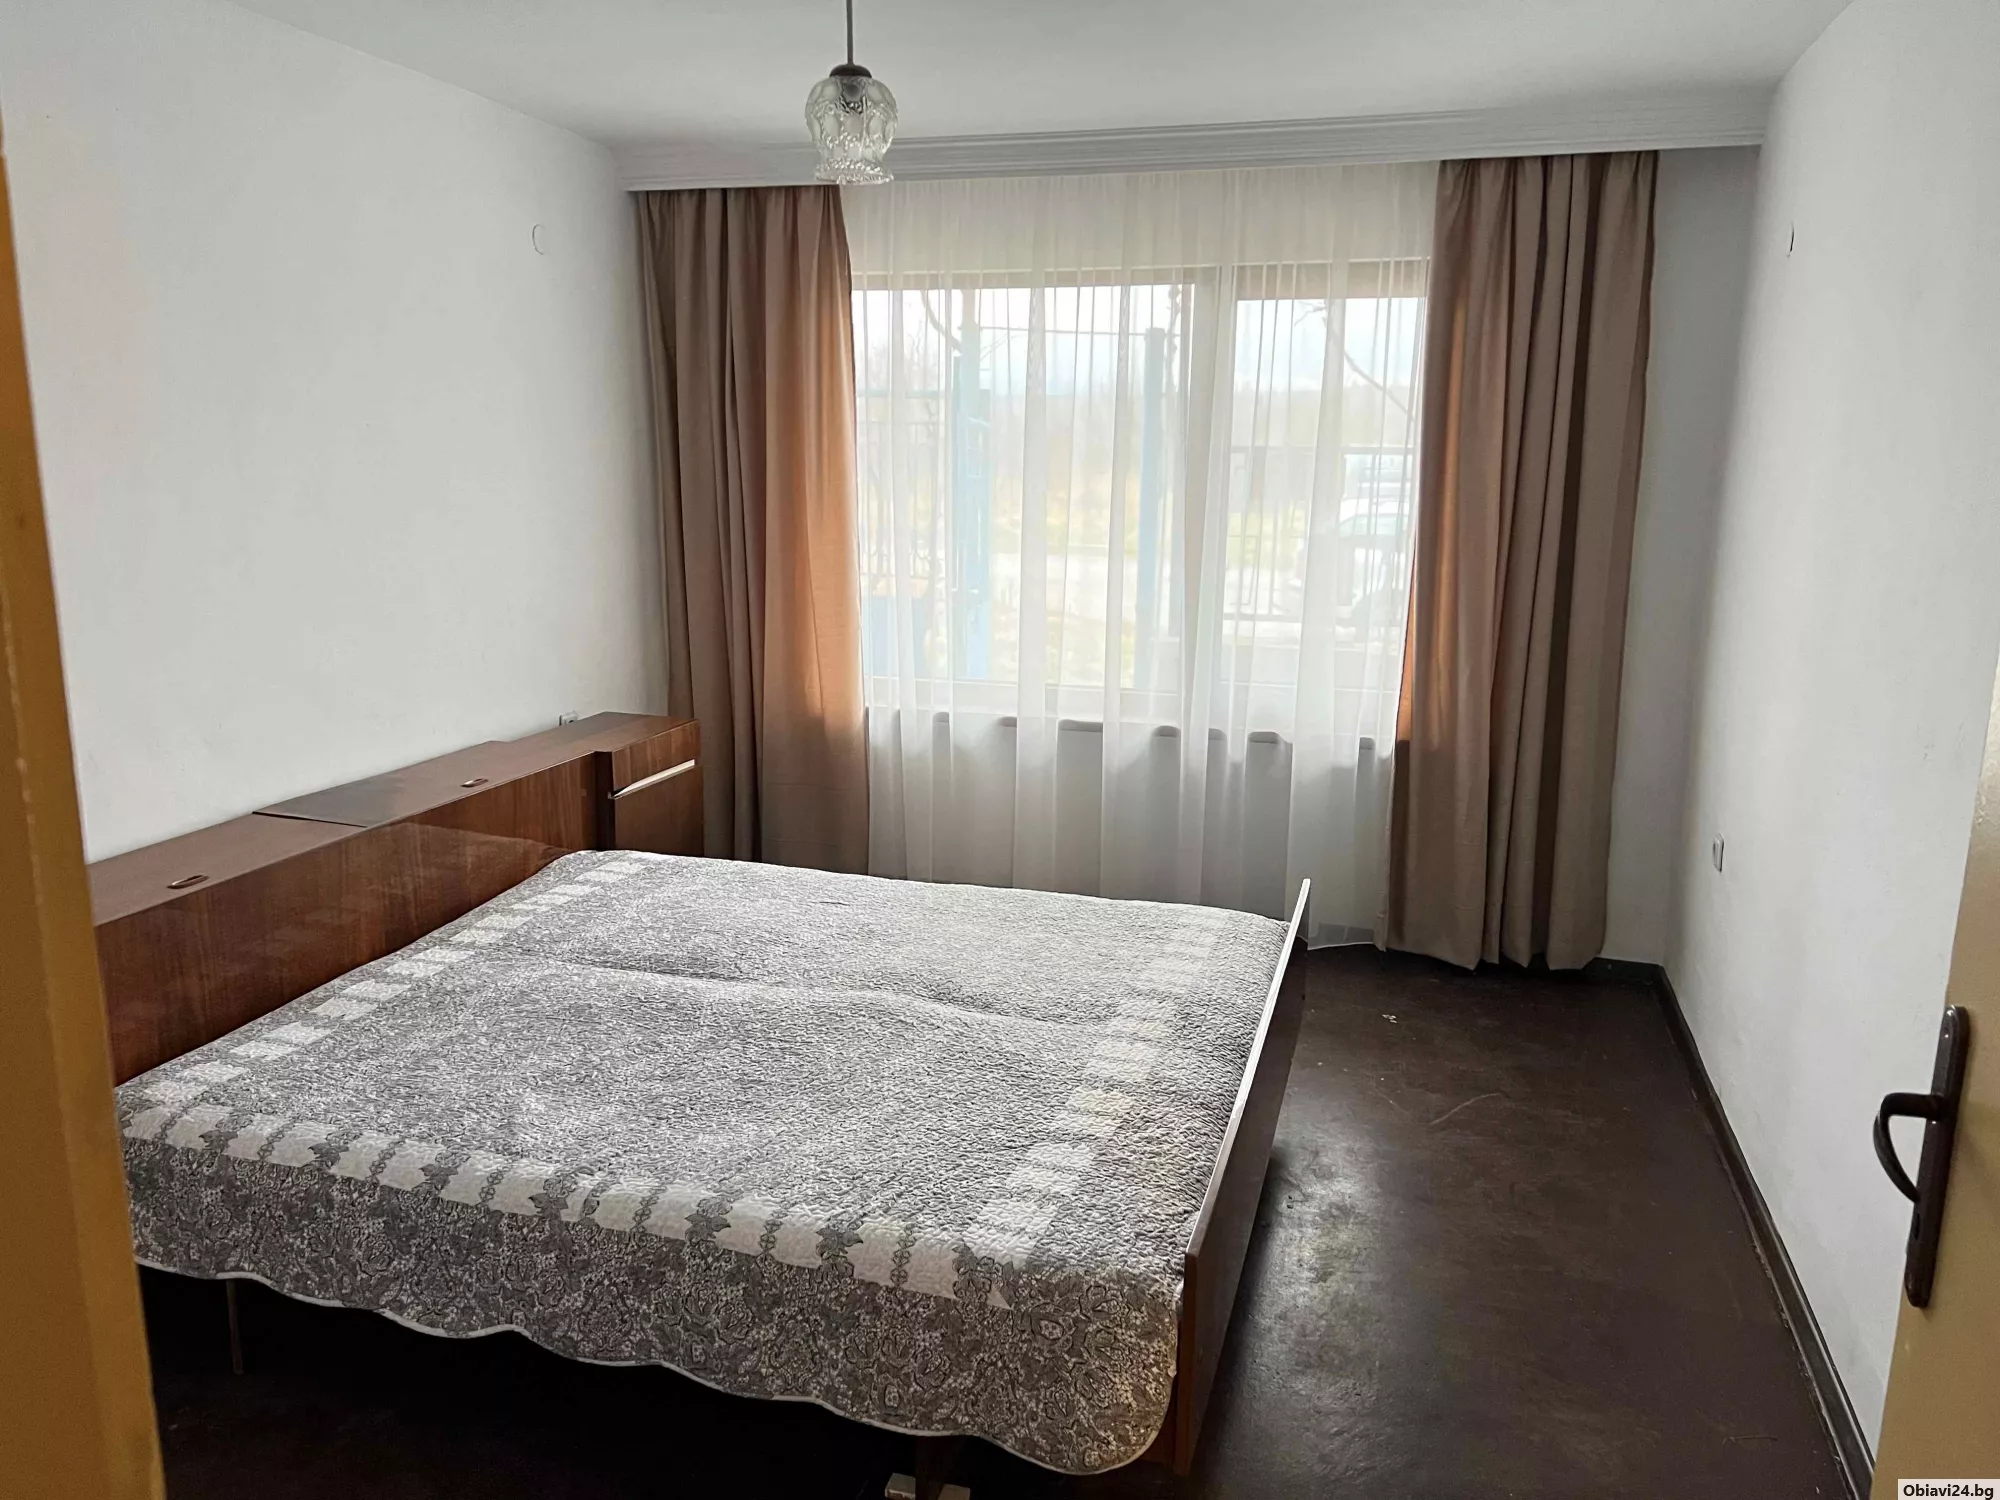 Самостоятелен апартамент, част от къща - obiavi24.bg